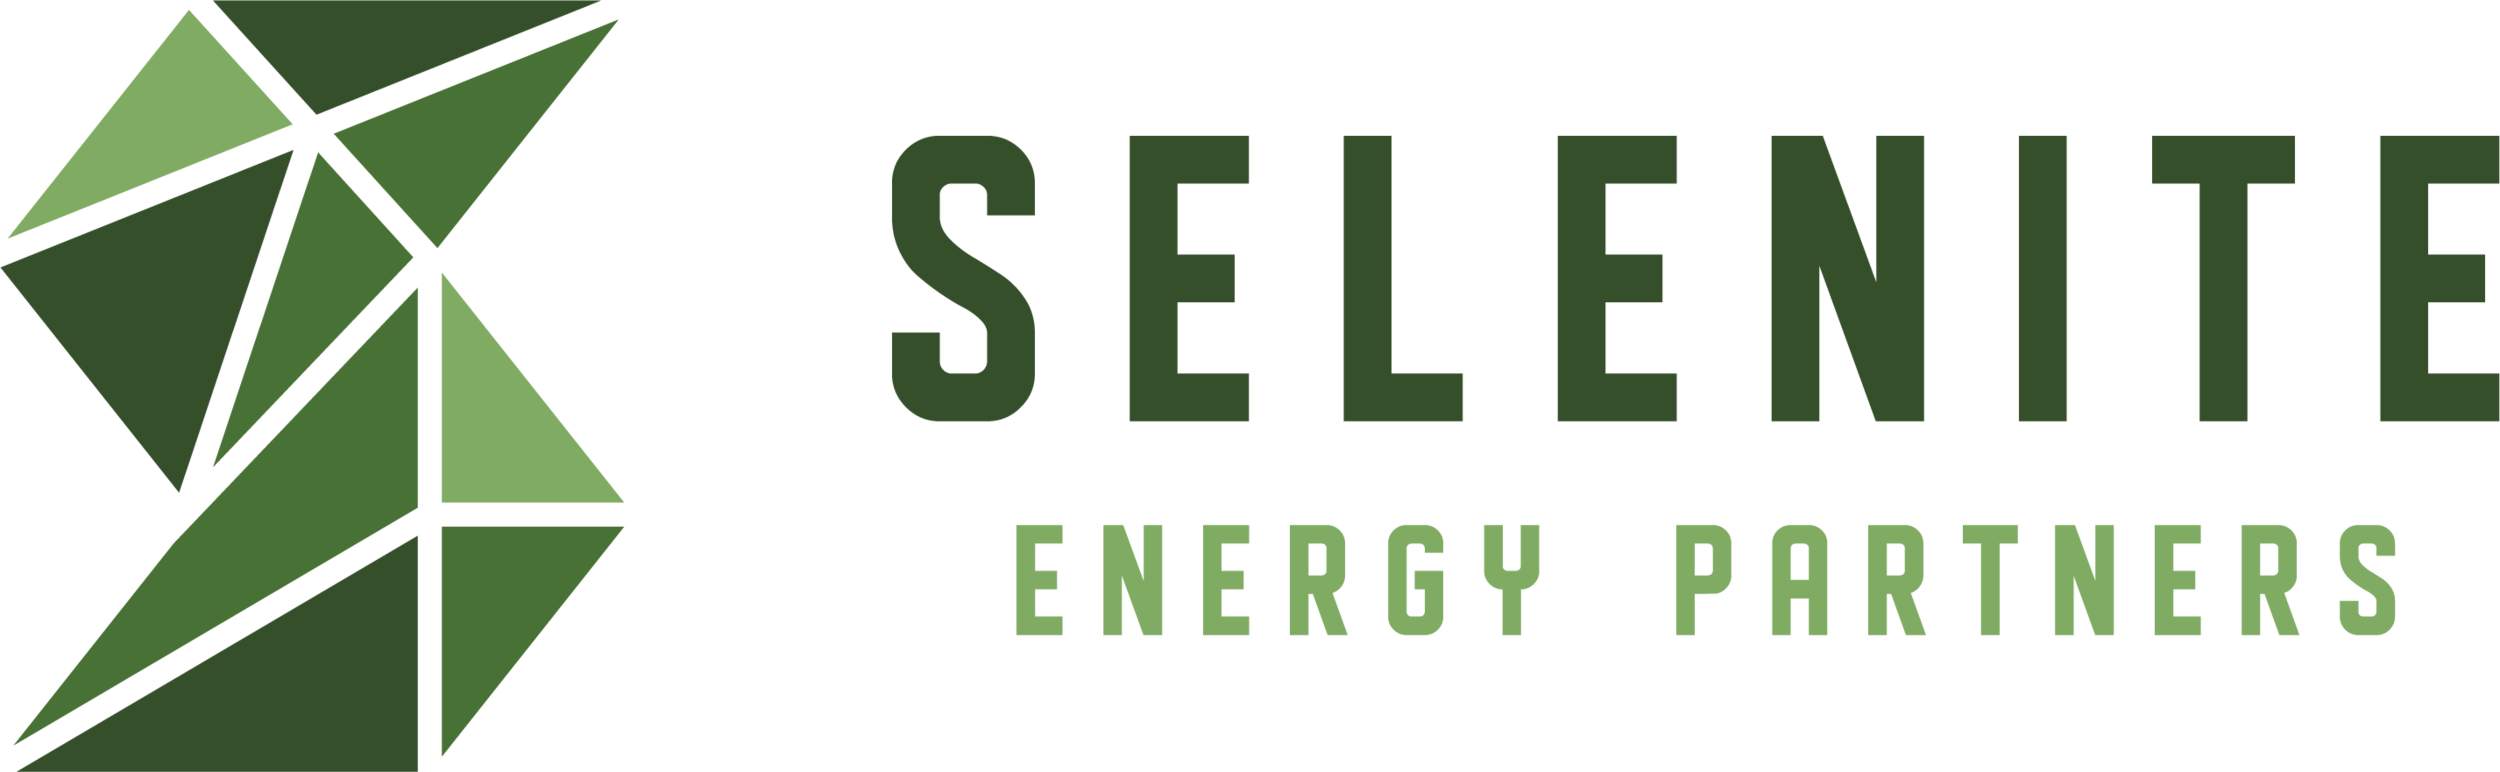 Selenite Energy Partners